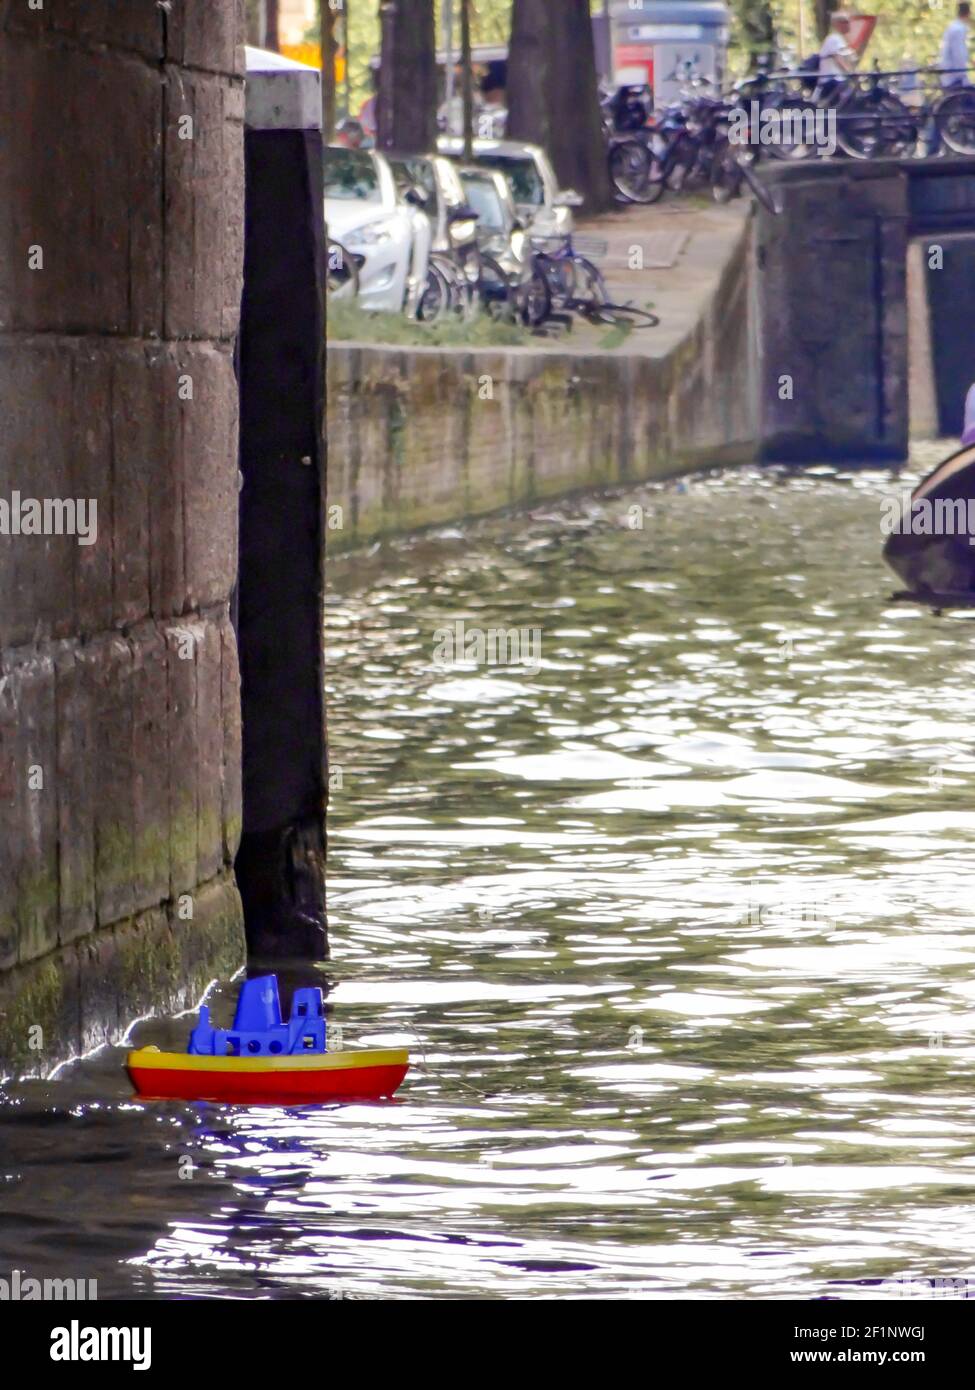 Un petit bateau en plastique aux couleurs rouge, bleu et jaune perdu dans un canal d'eau à Amsterdam. Banque D'Images